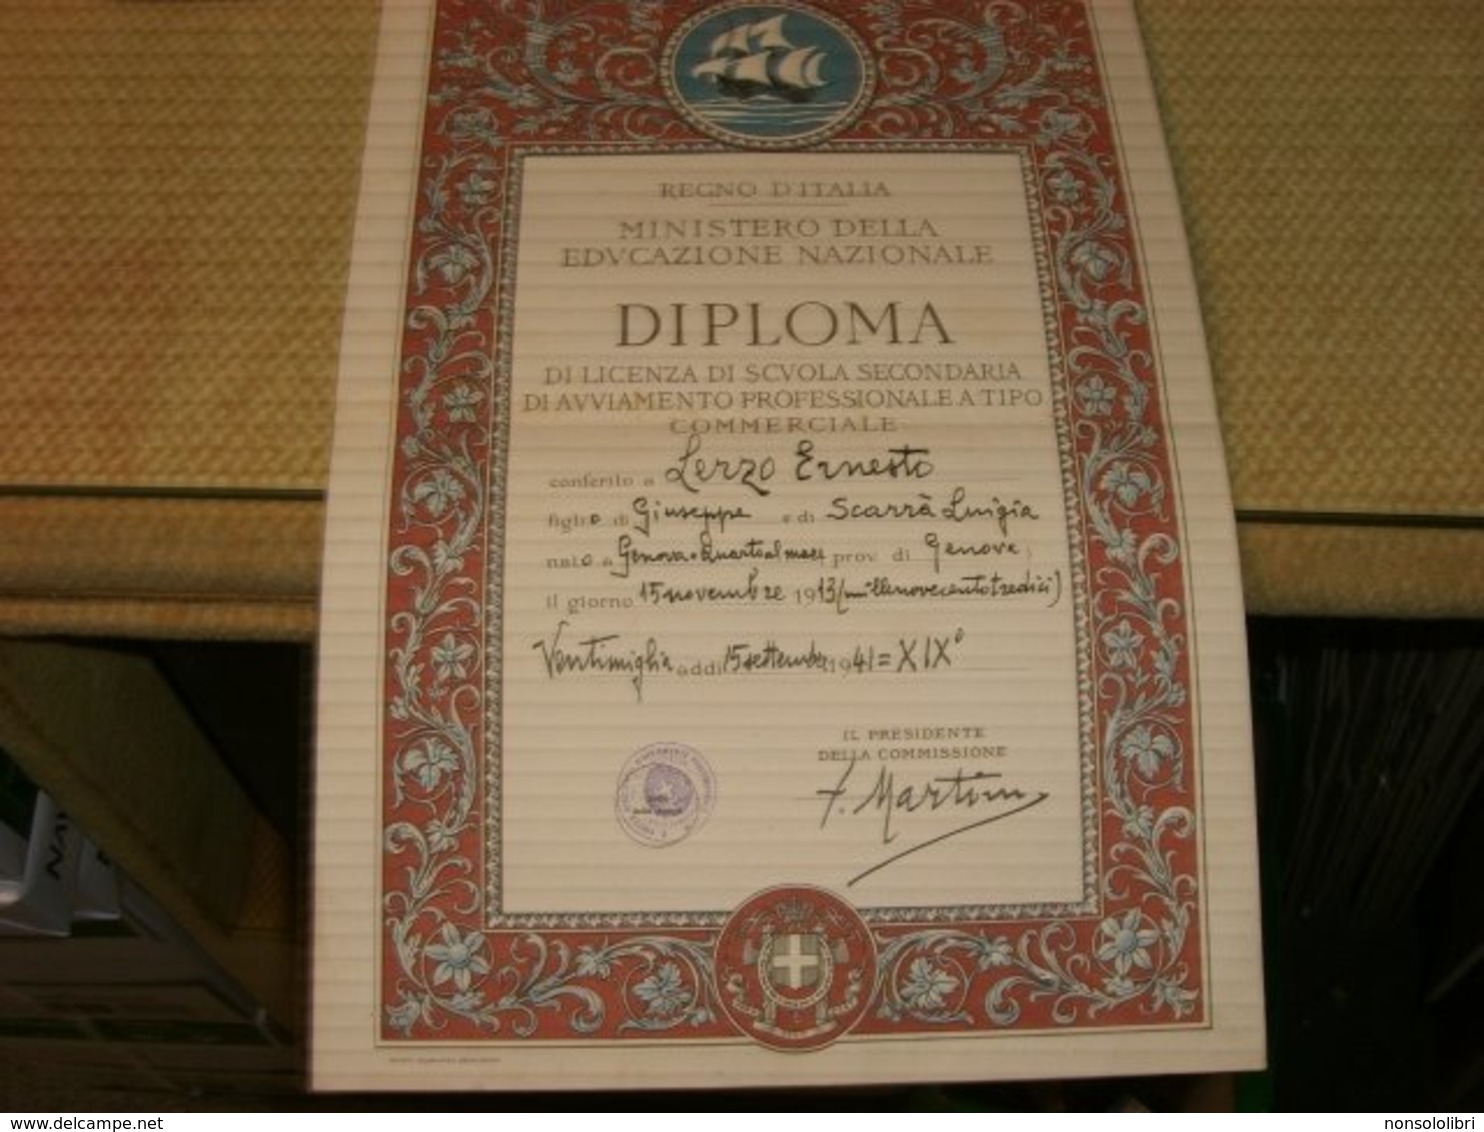 DIPLOMA REGNO D'ITALIA DI LICENZA DI SCUOLA SECONDARIA 1941 - Diplomi E Pagelle